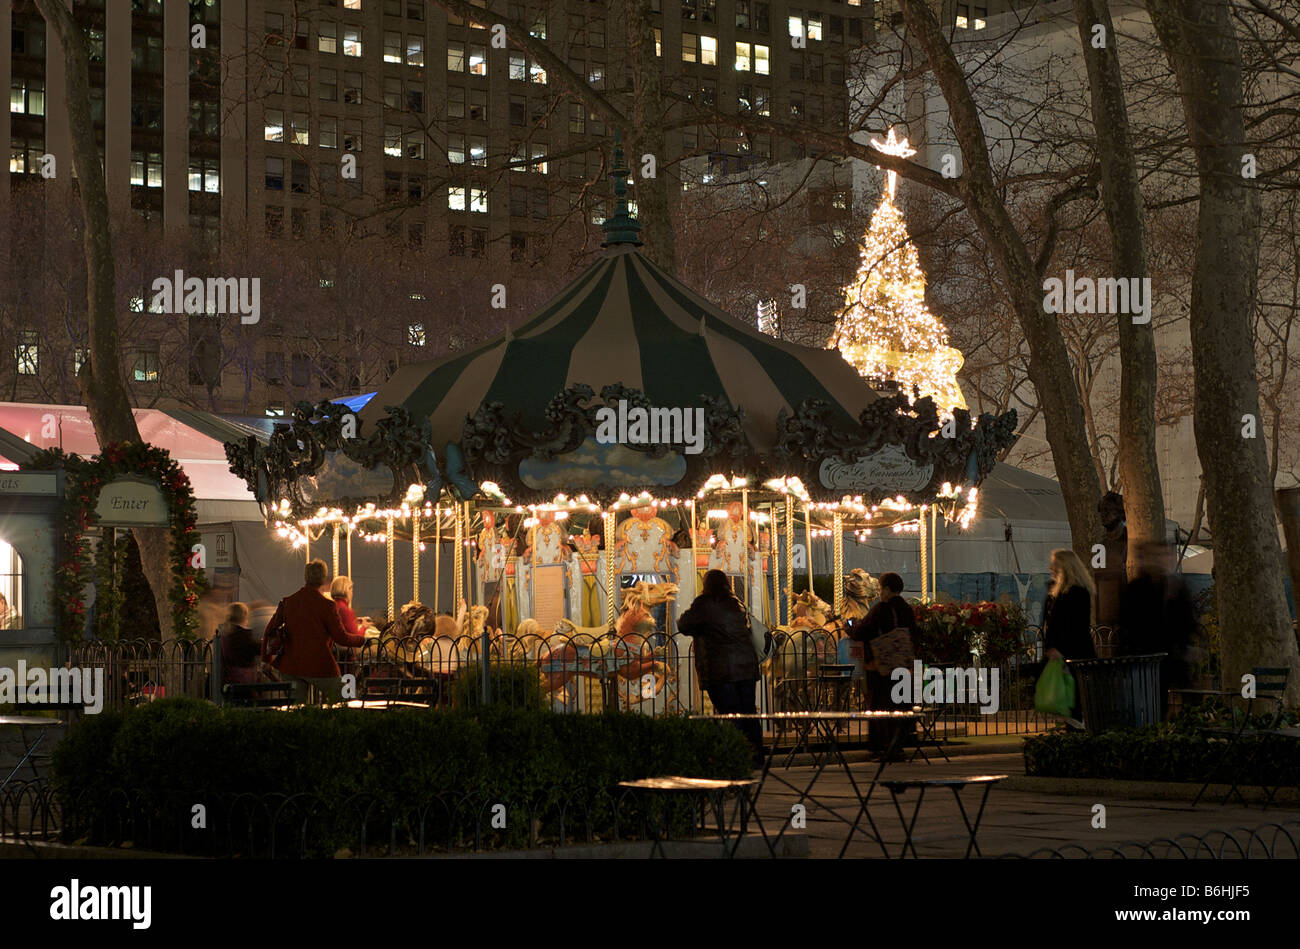 Nächtliche Karussellfahrt im Bryant Park New York (für nur zur redaktionellen Verwendung) Stockfoto